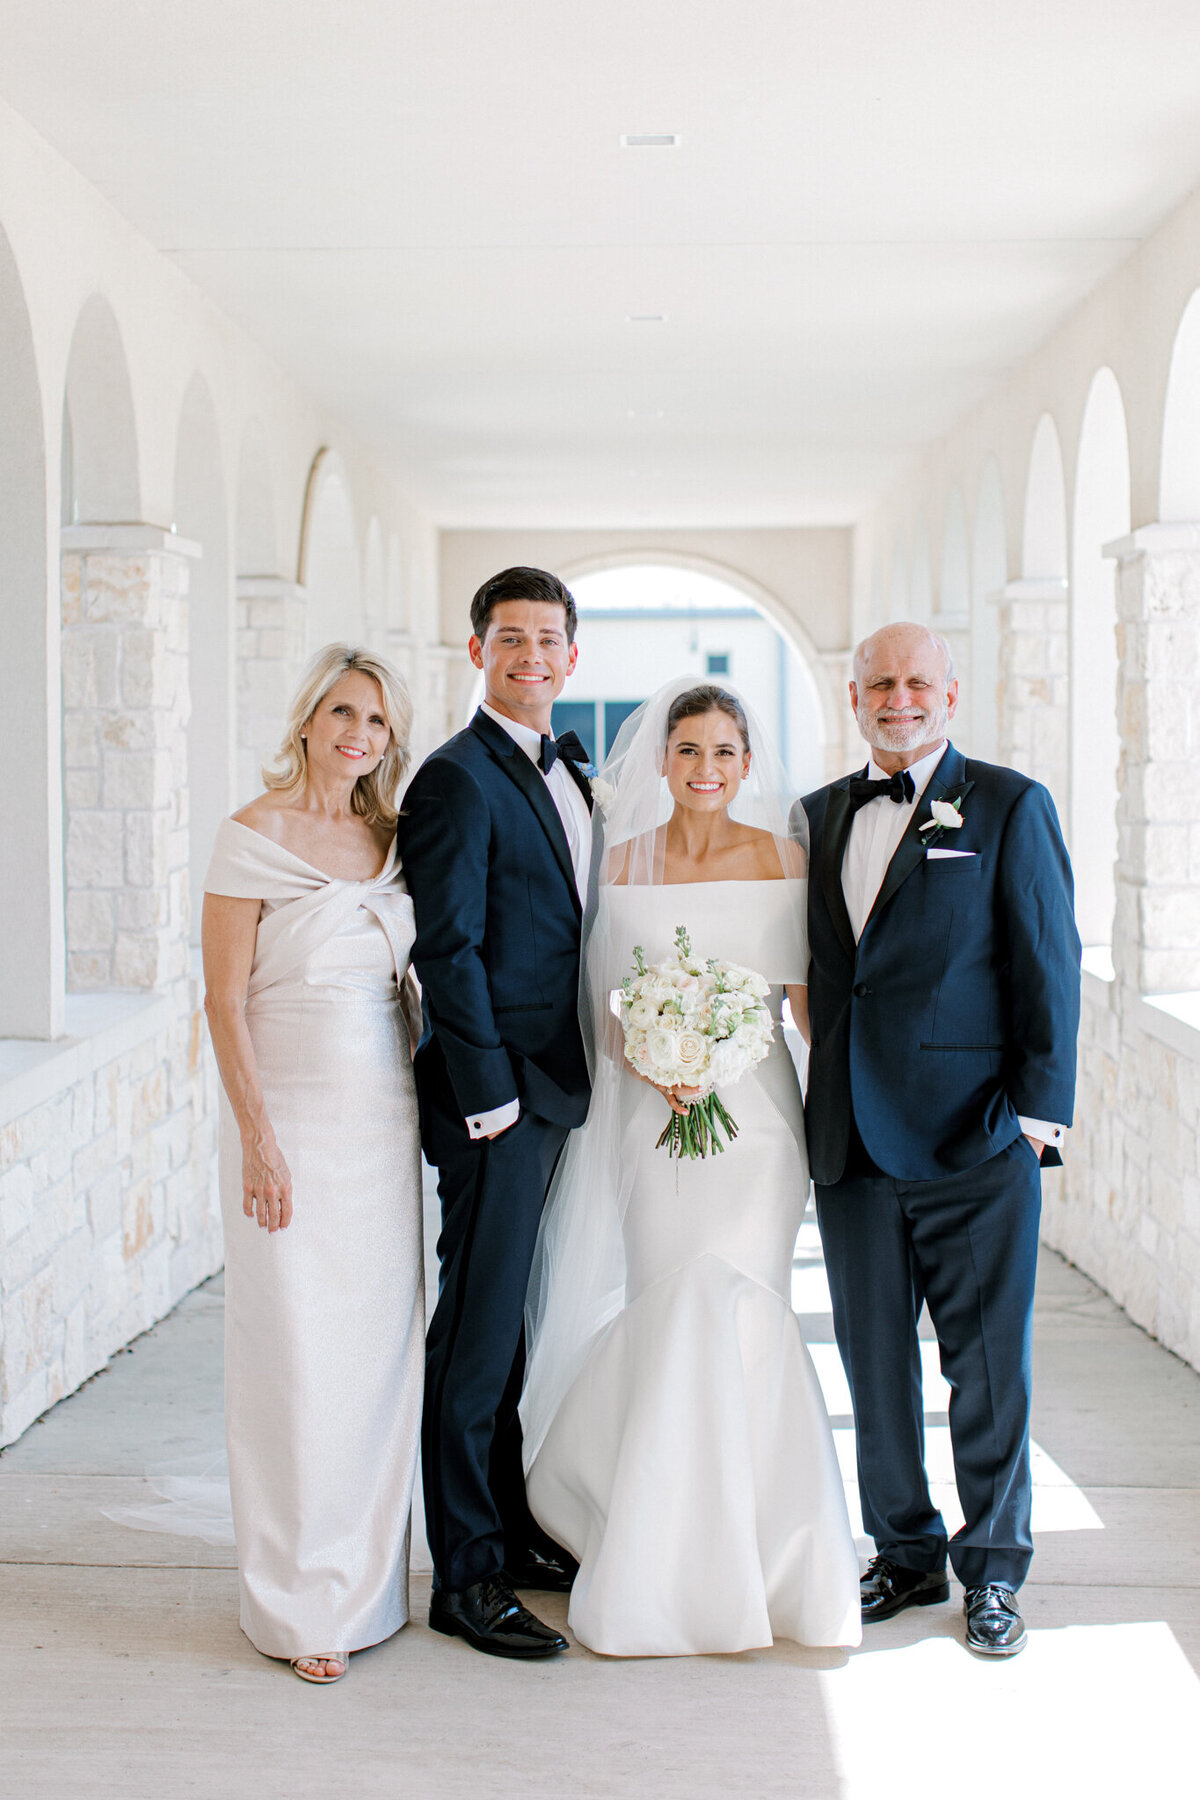 Annie & Logan's Wedding | Dallas Wedding Photographer | Sami Kathryn Photography-128